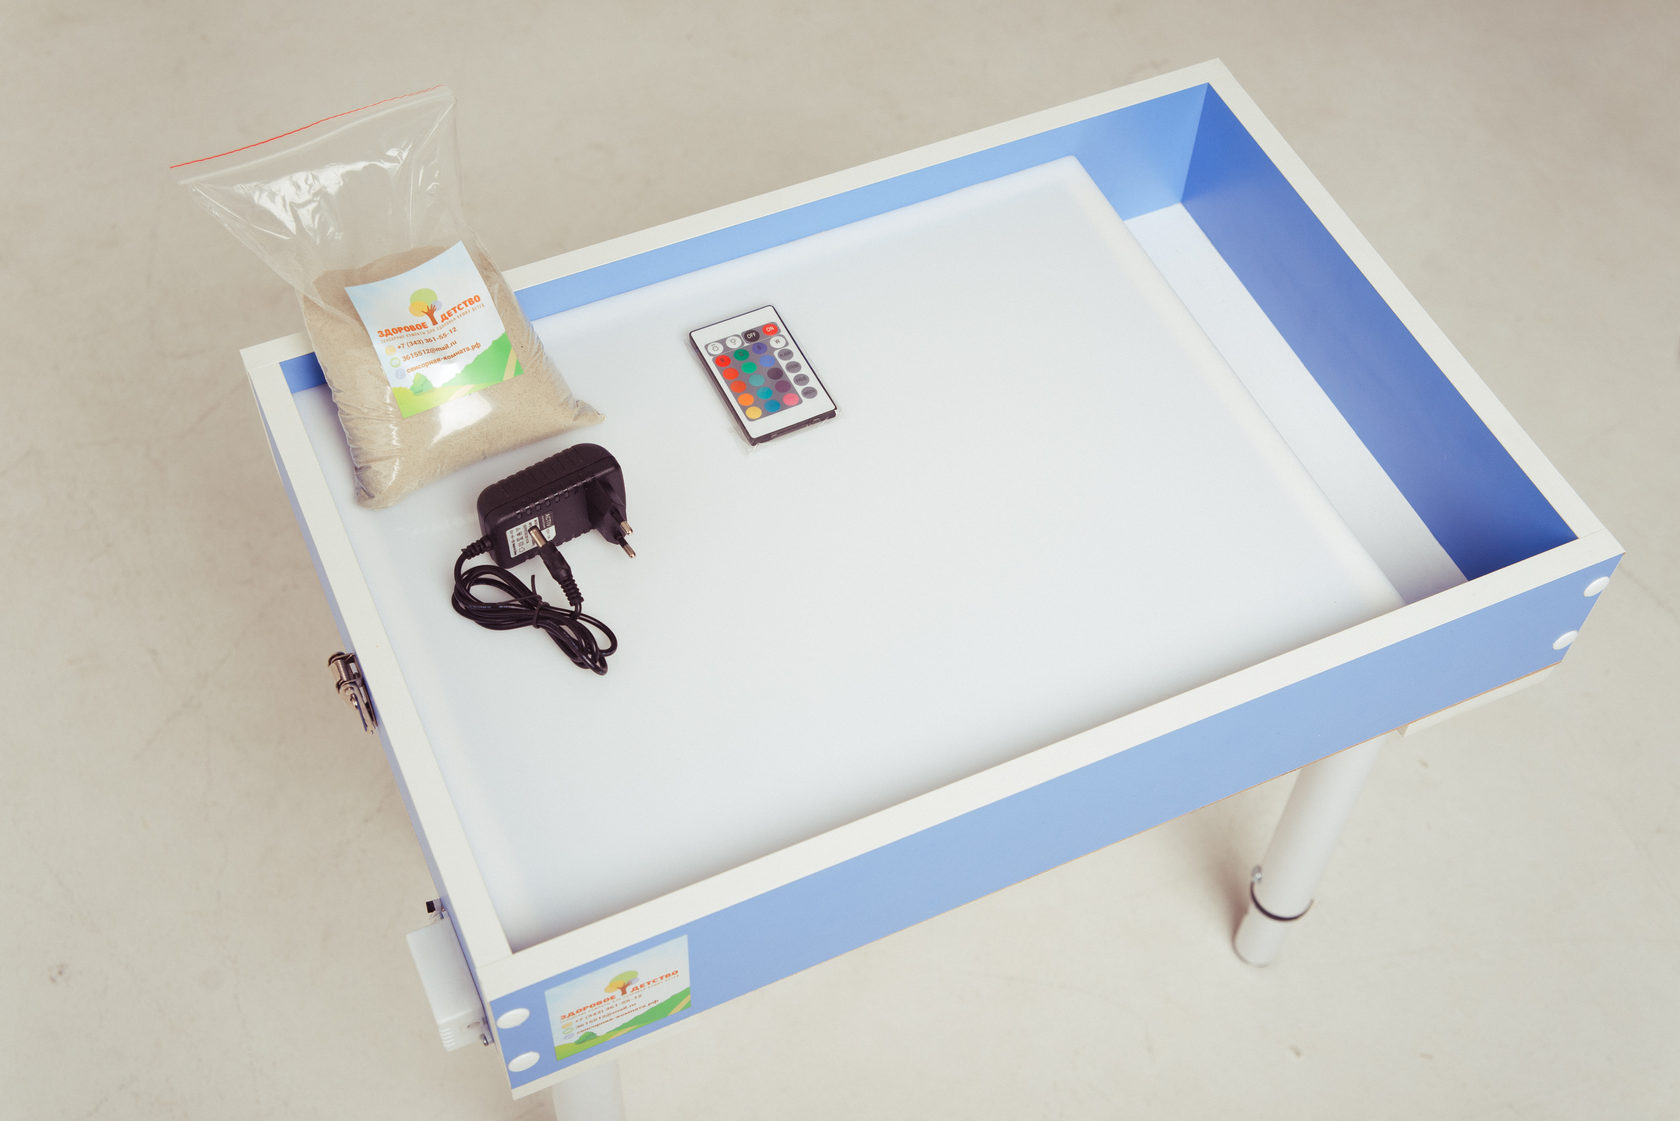 ДФ/Вт 90 стол игровой для рисования песком со свет.эффект. (70*50*48-61см)